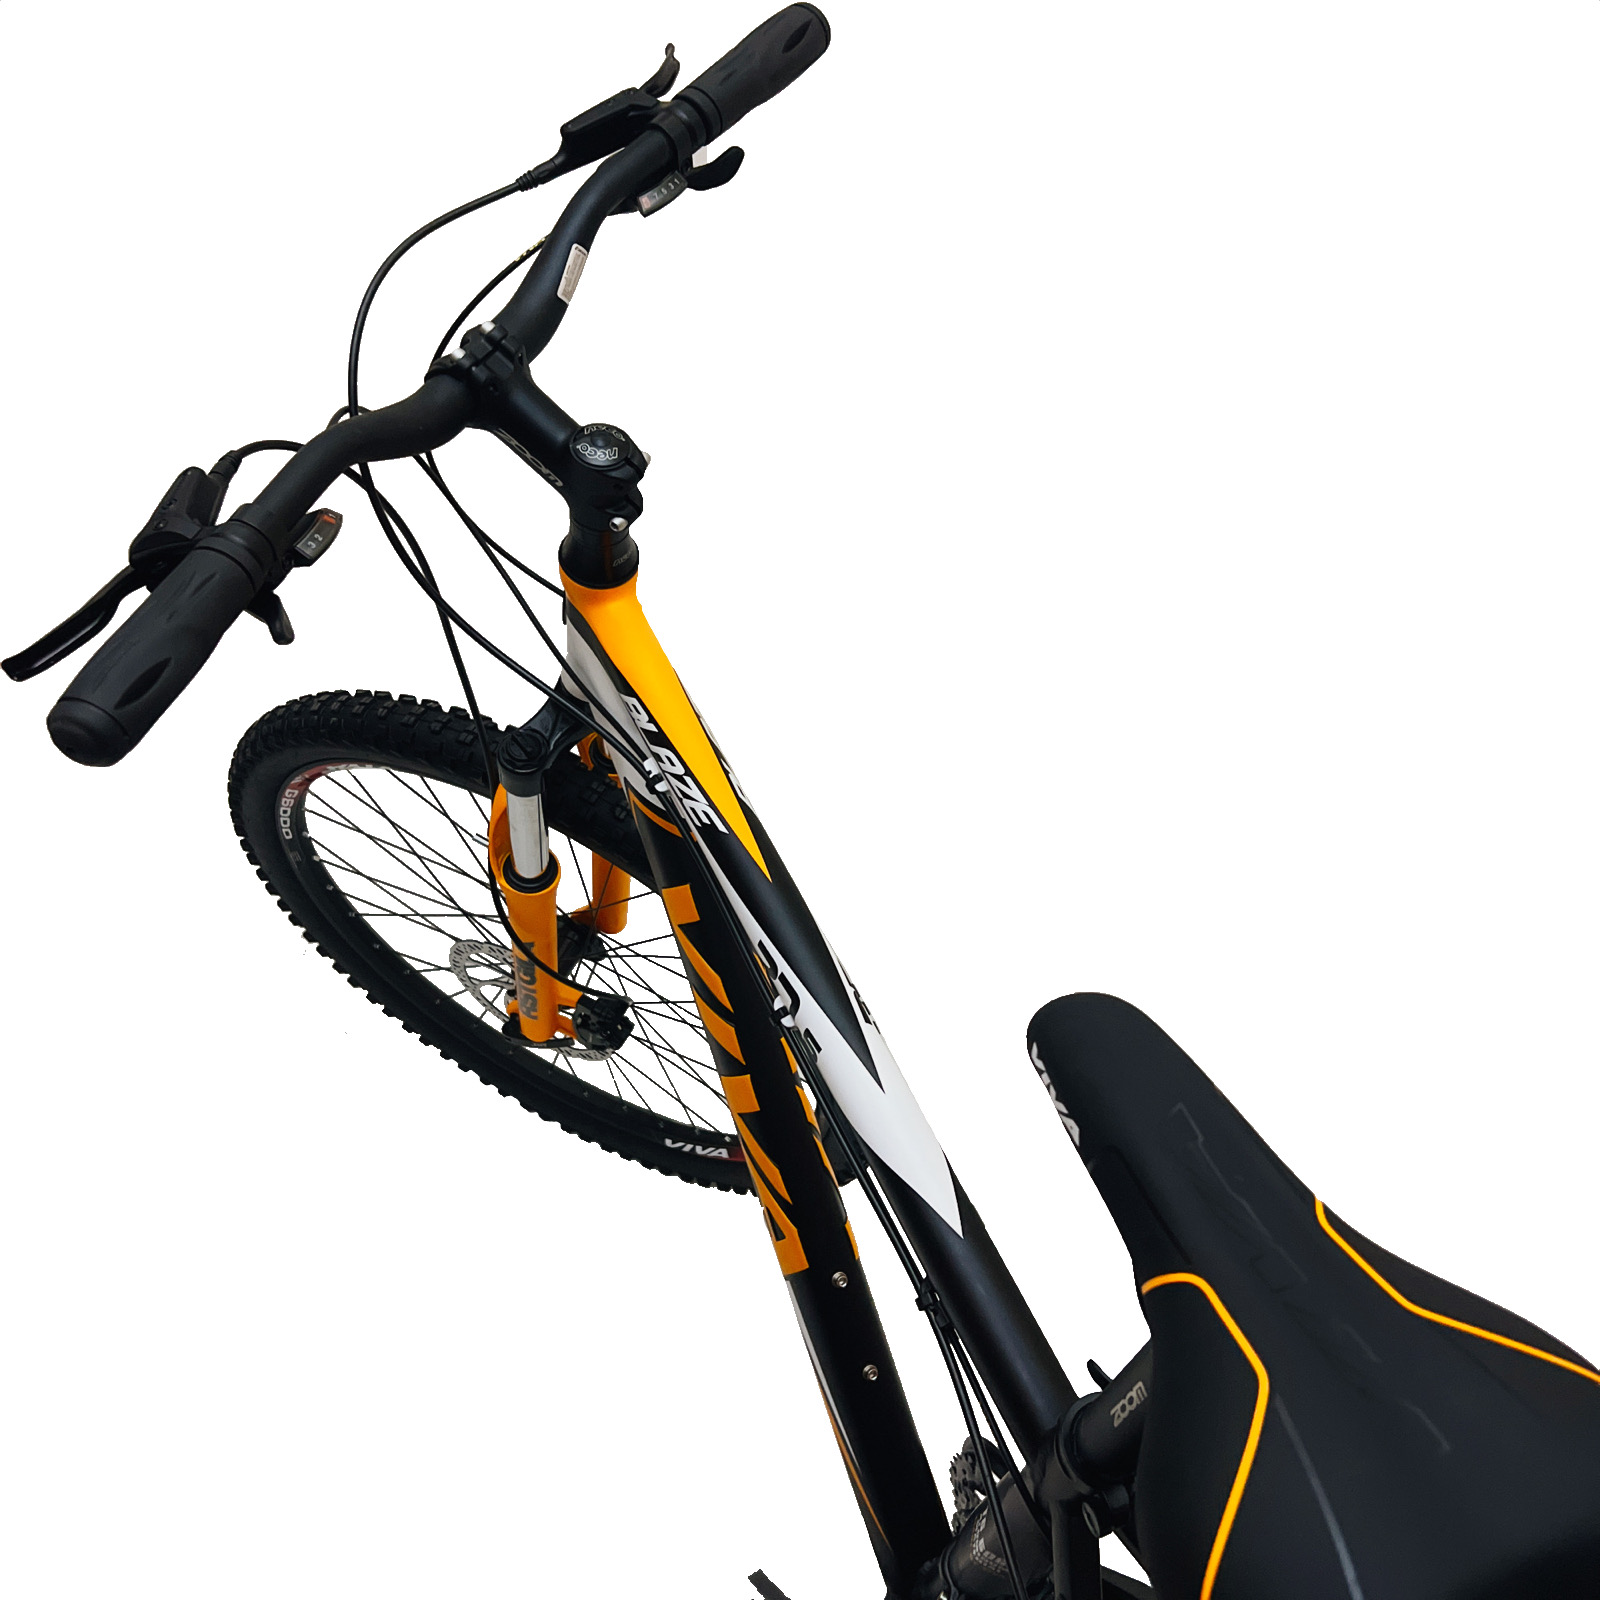 دوچرخه کوهستان ویوا مدل BLAZE کد 27 سایز 27.5 -  - 4